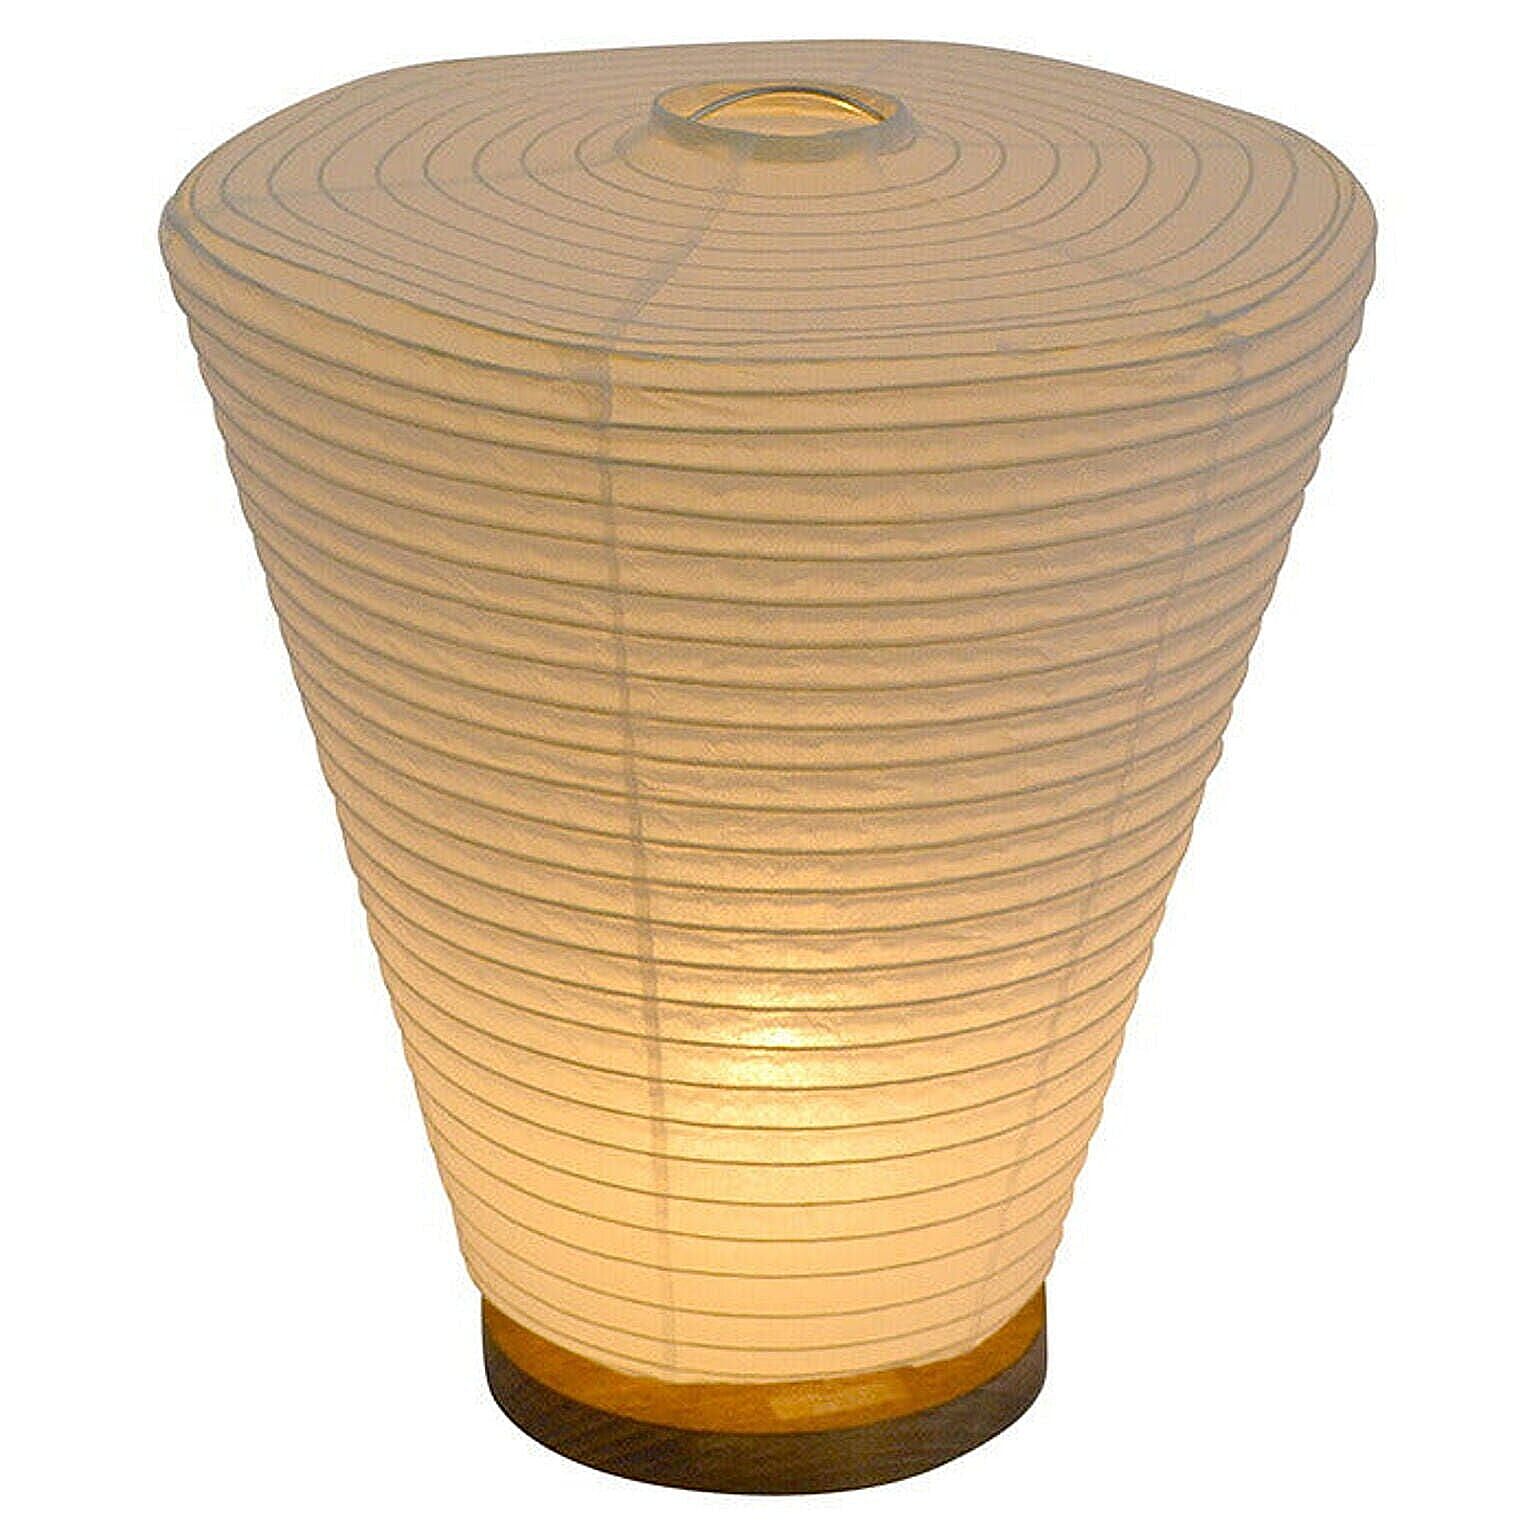 テーブルライト 和紙 drum 本美濃紙 電球付属 幅240x奥行240x高さ275mm 彩光デザイン